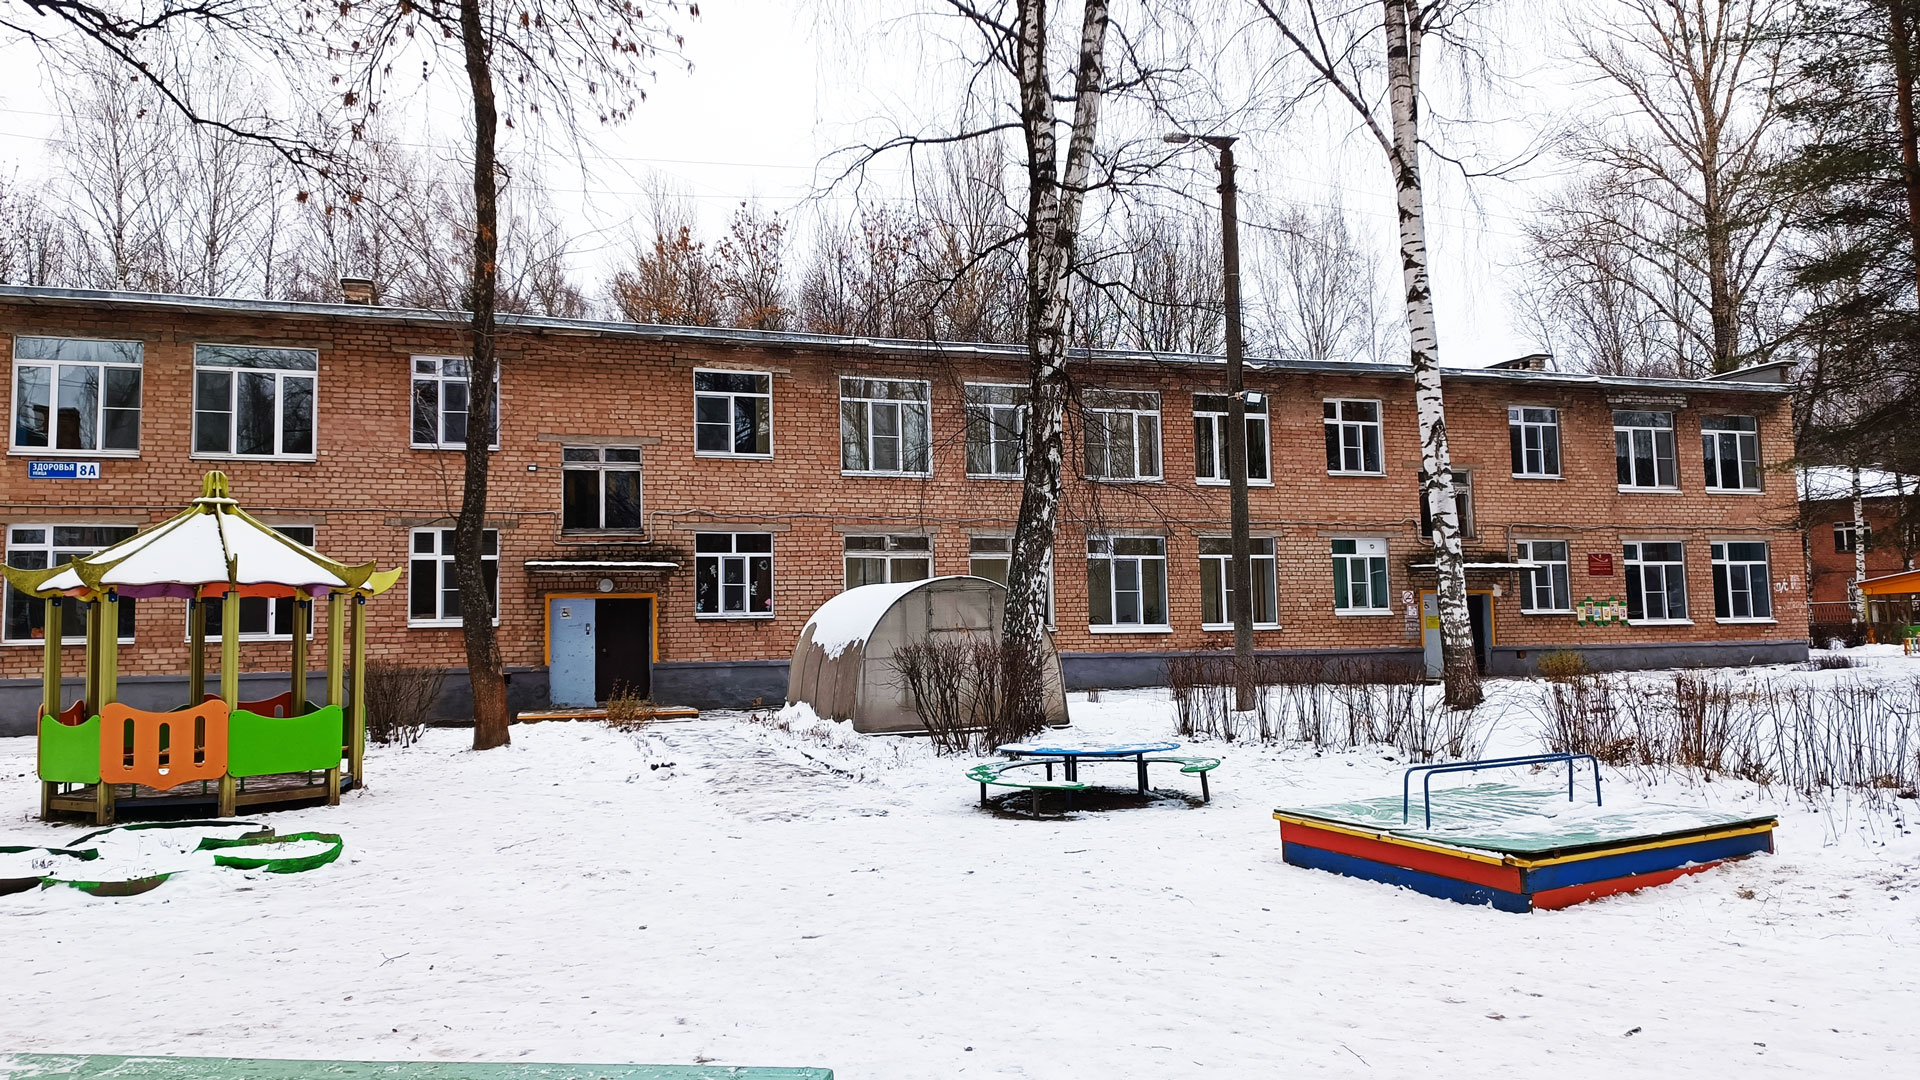 Детский сад 104 Ярославль: общий вид здания.